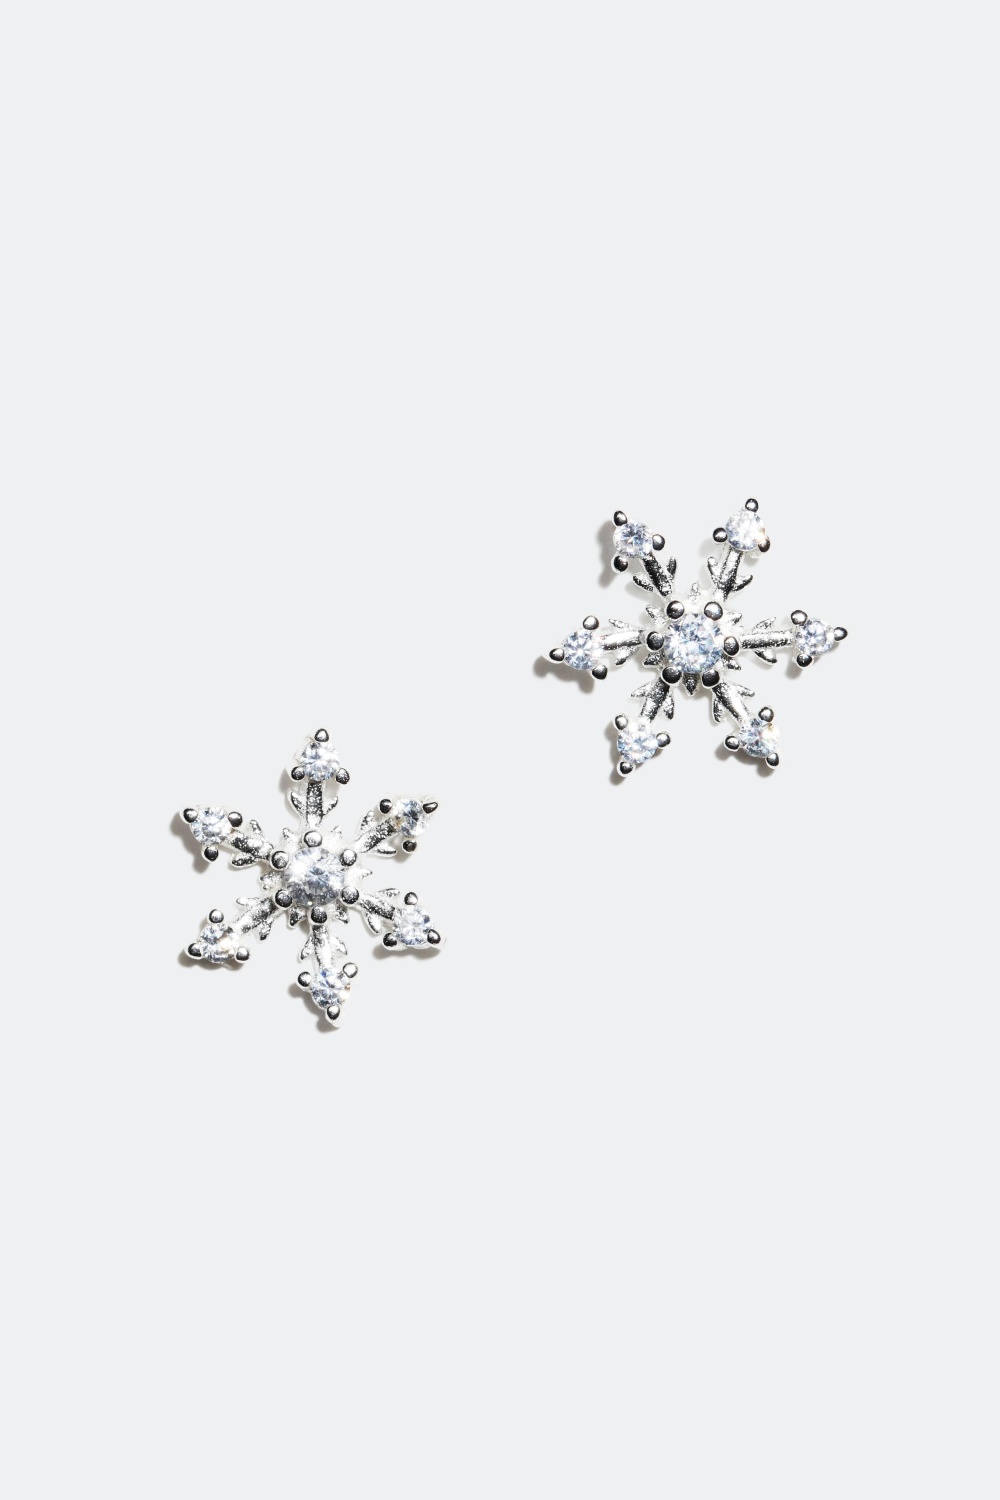 Korvakorut, lumihiutaleet aitoa hopeaa ryhmässä Joulu / Christmas Collection @ Glitter (325368)